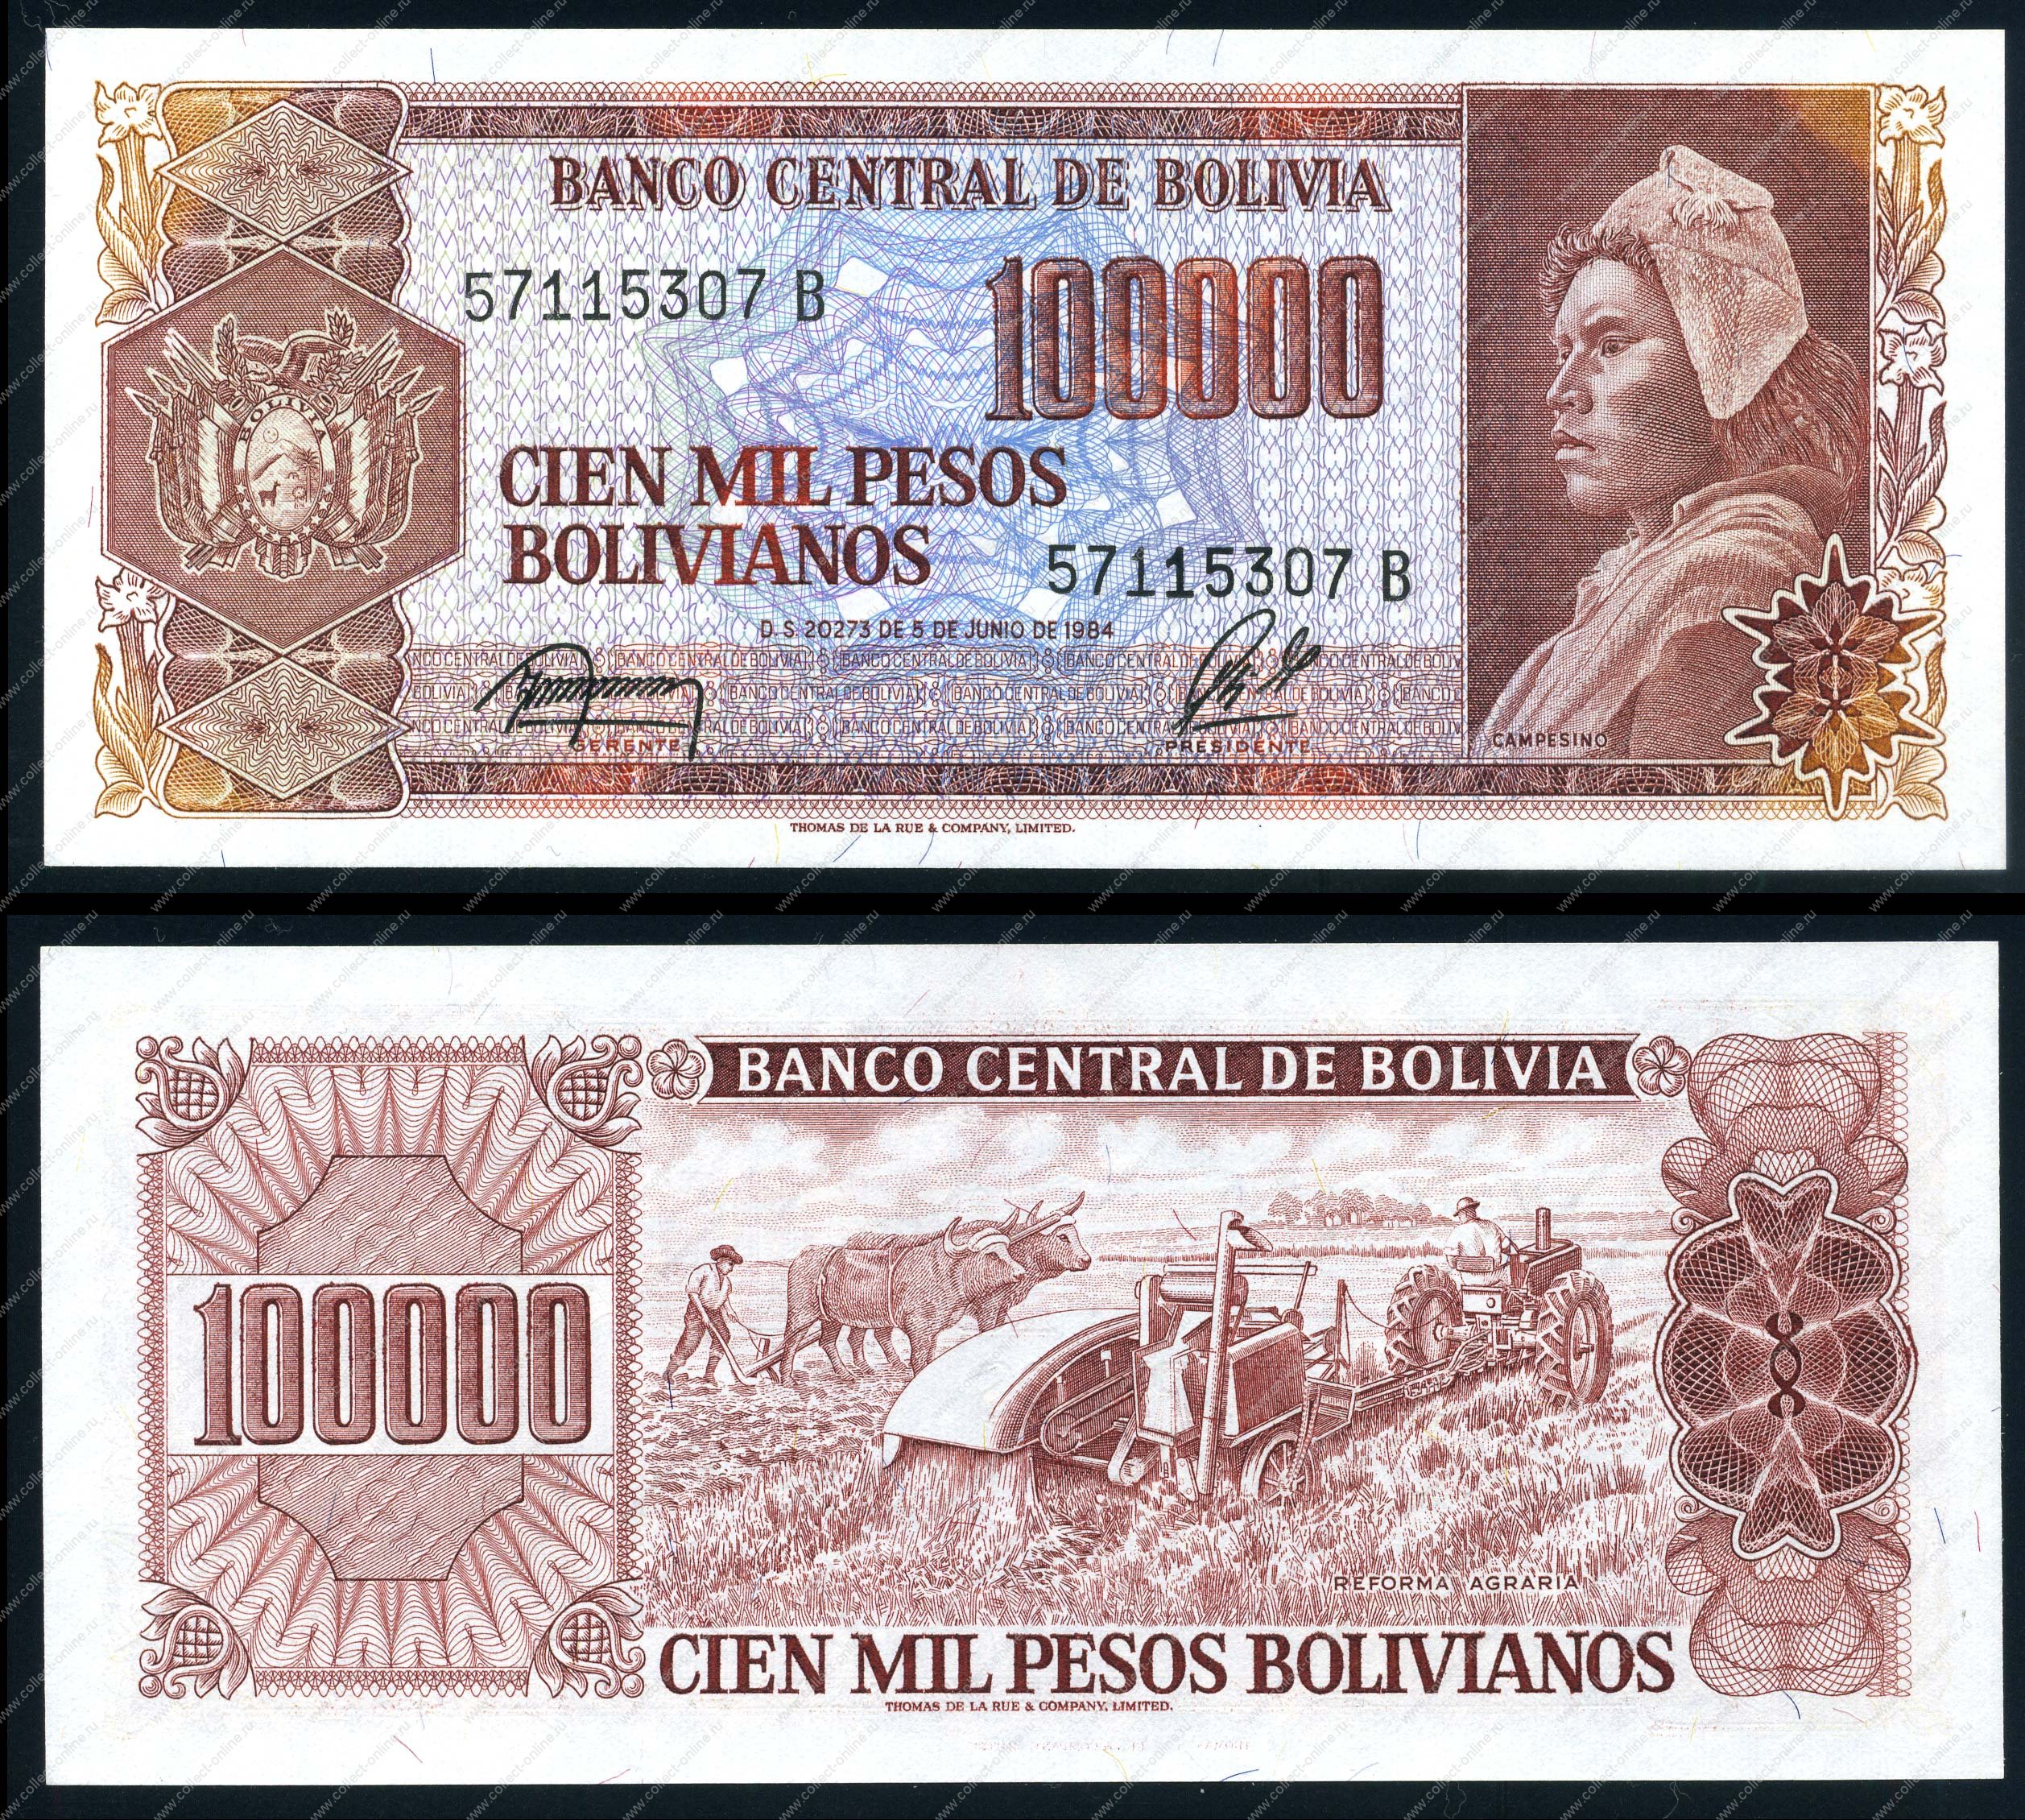 Миллион песо в рублях. Боливиано. The Banco Central de Bolivia. 15 Тыс песо в рублях. Сколько стоит 20 тысяч песо на русские деньги.